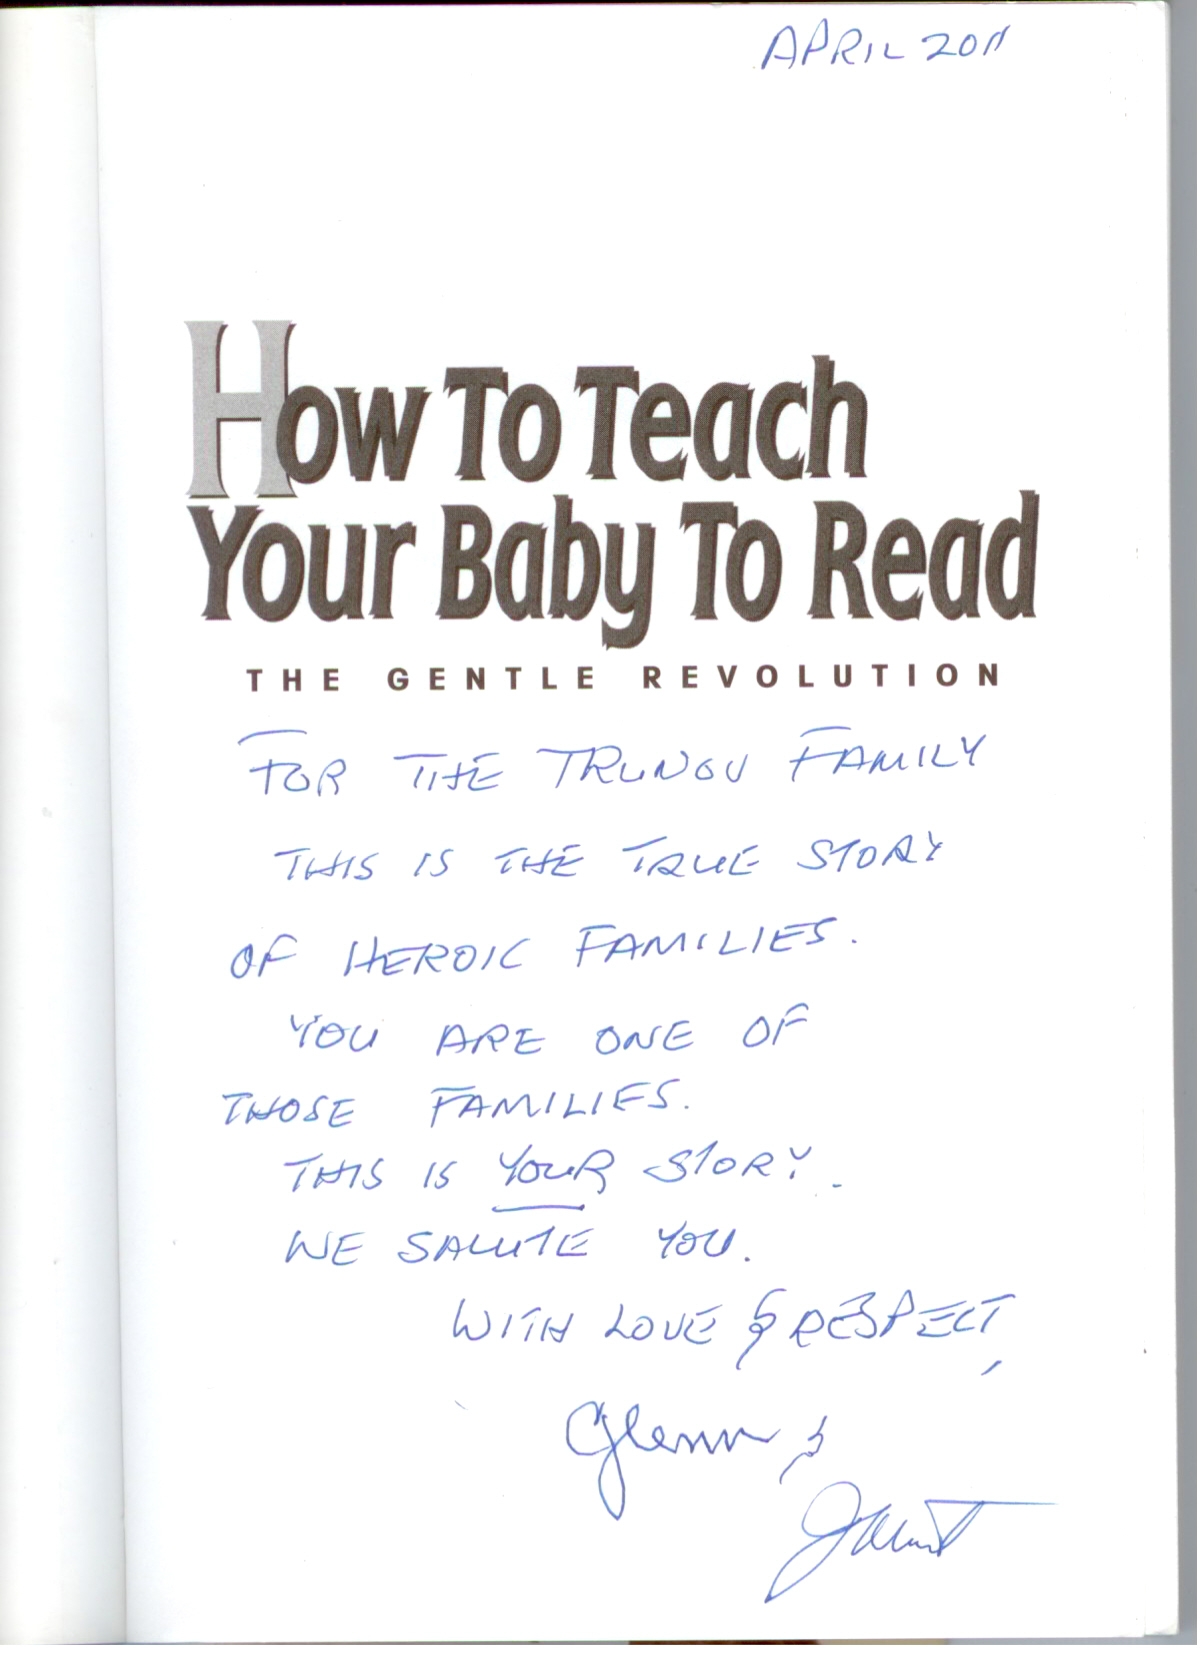 Автографы Глена Домана и Джанет Доман на книге "Как научить Вашего ребенка читать"